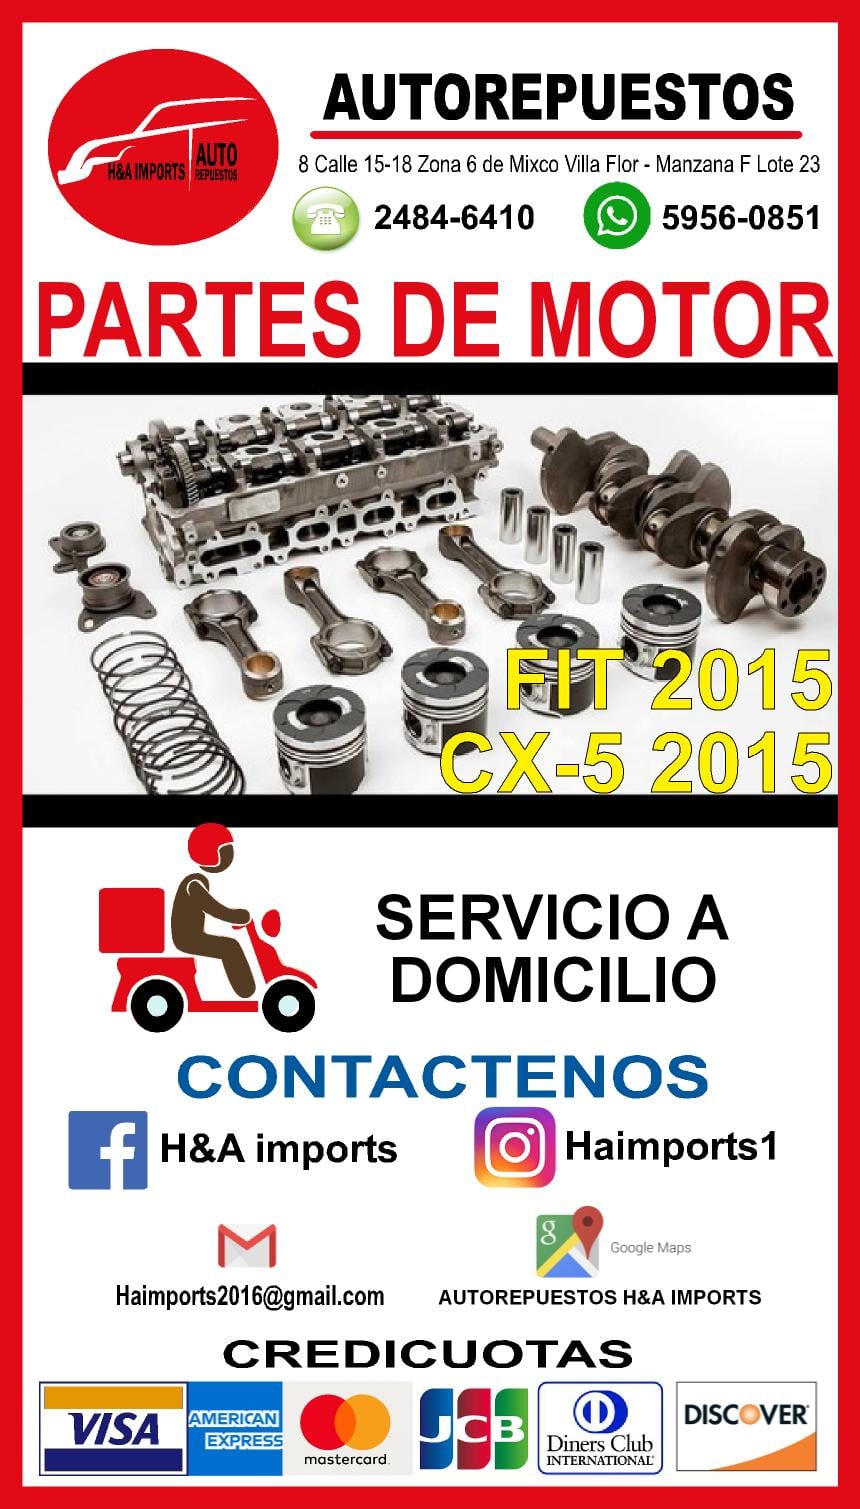 PARTES DE MOTOR PARA FIT 2015 Y CX5 2015